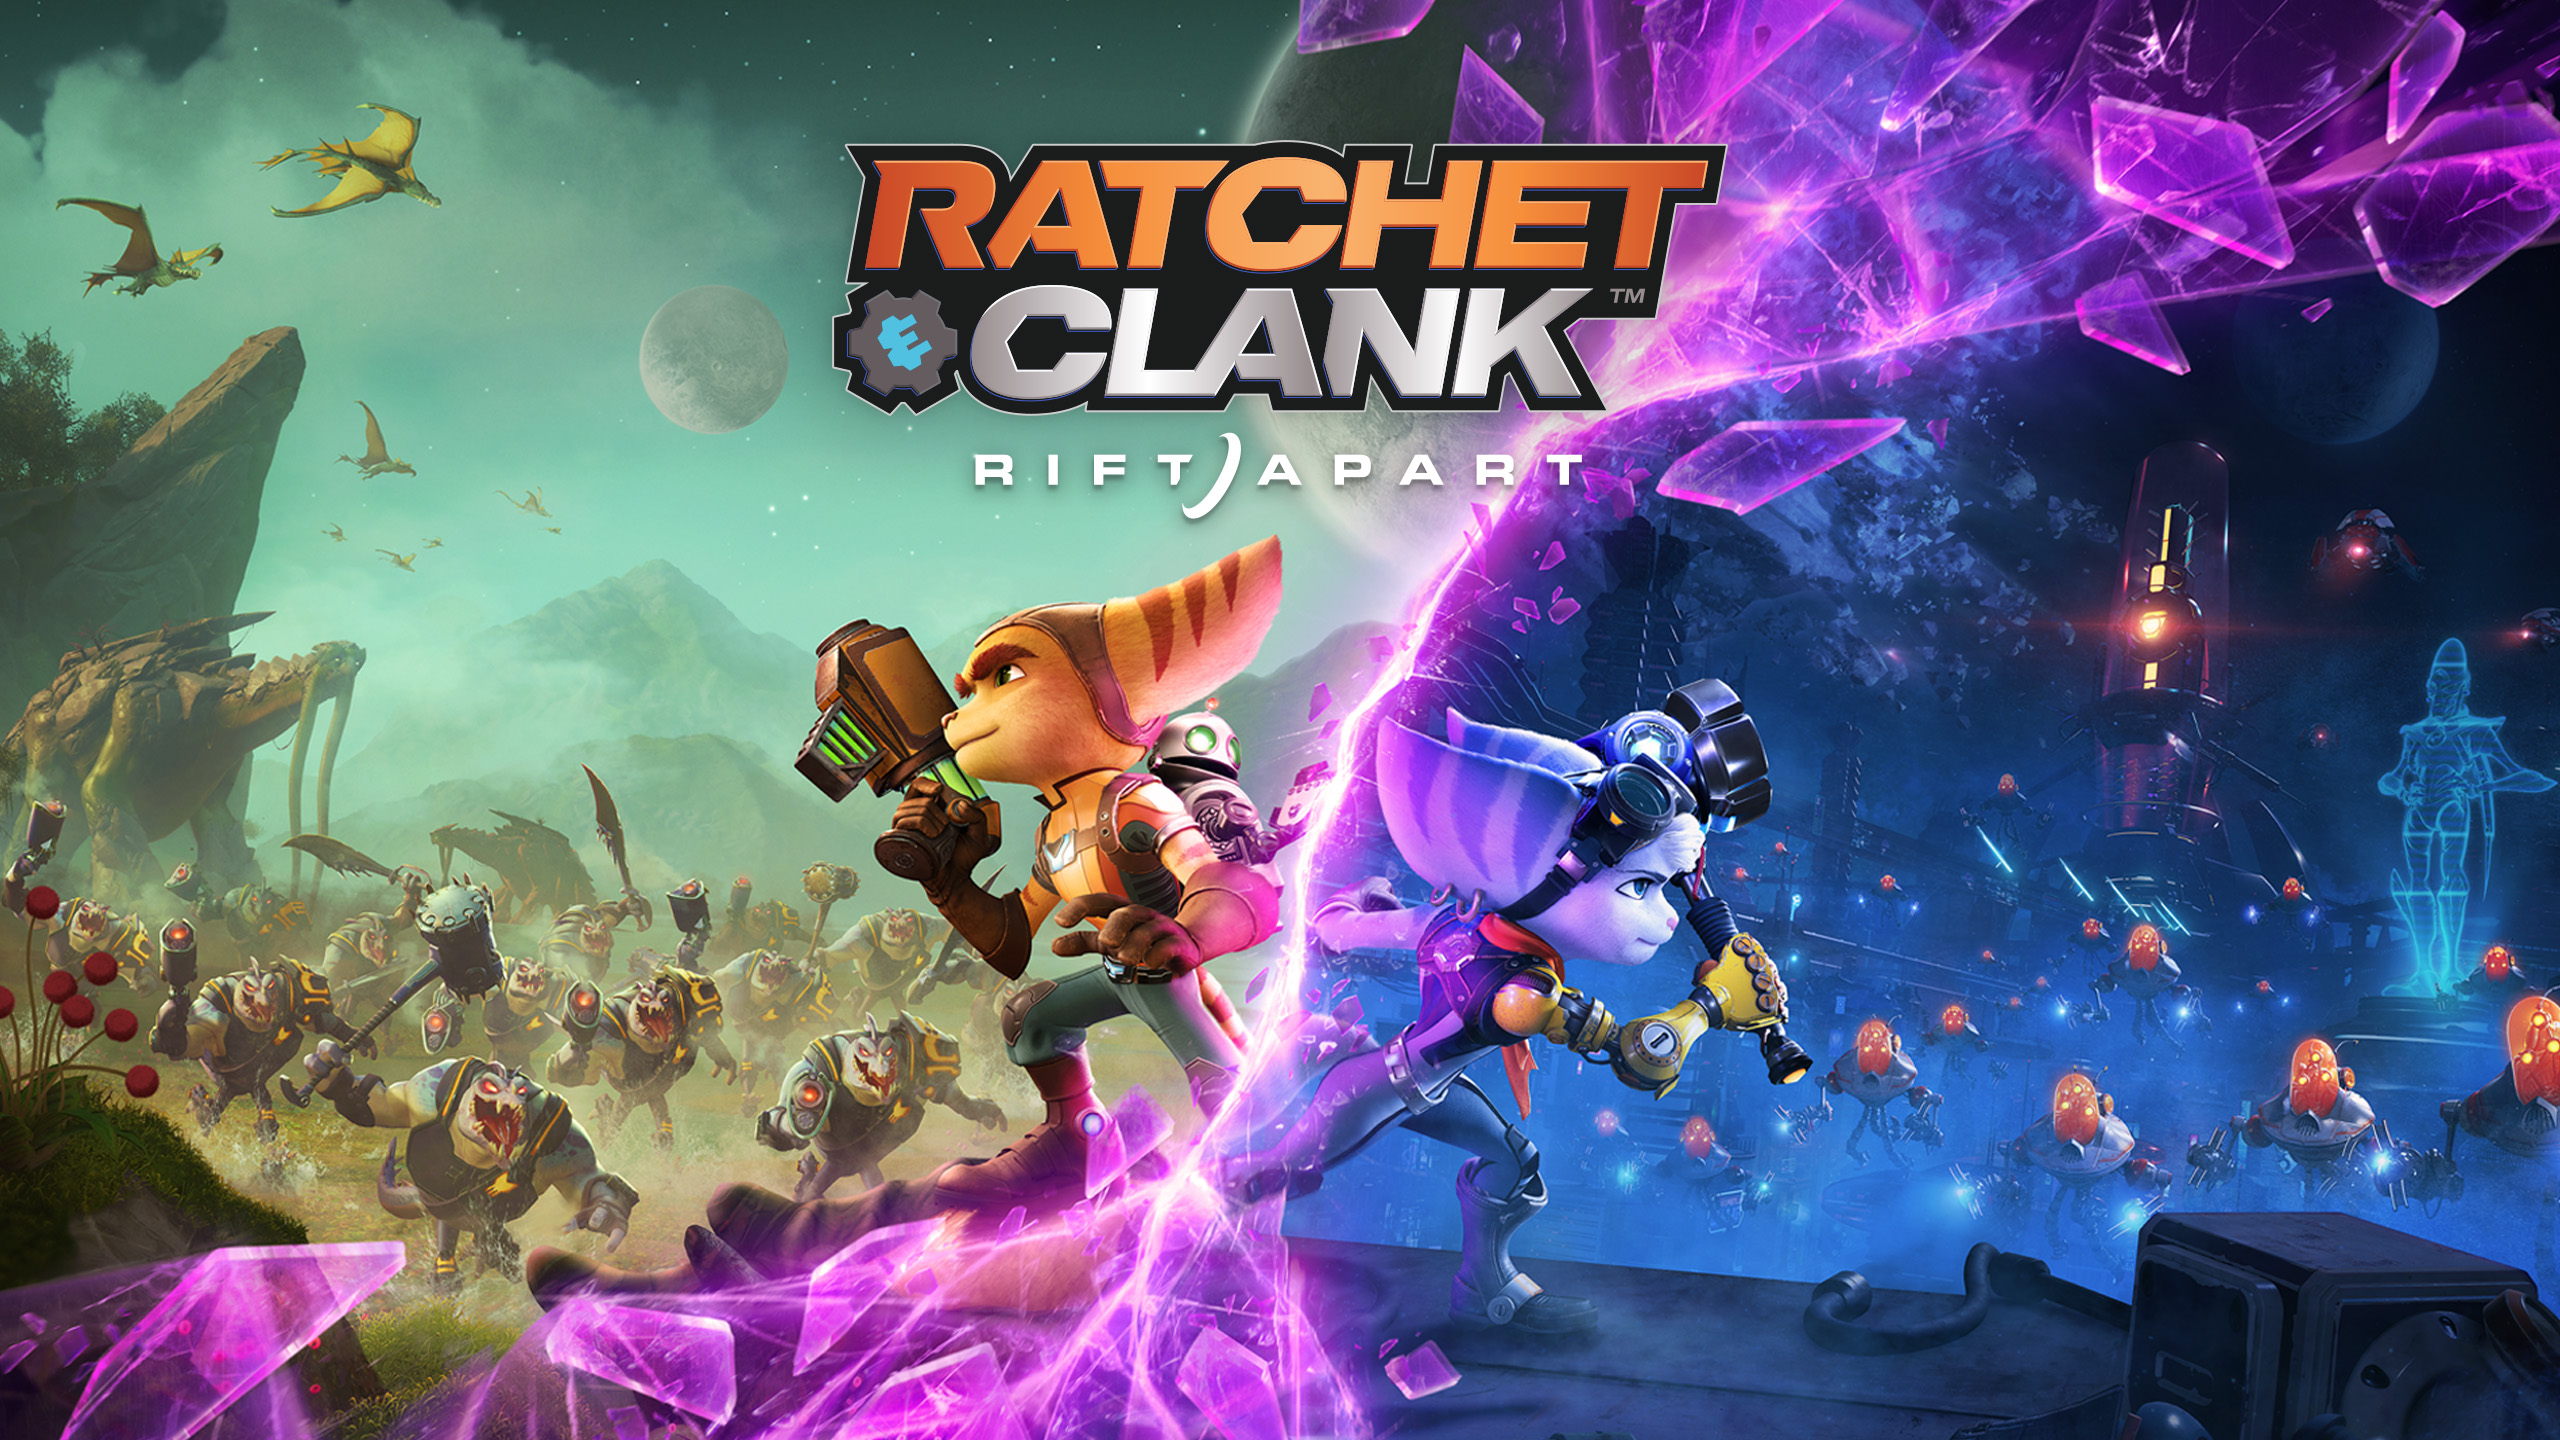 Ratchet & Clank: Rift Apart ИГРОМУЛЬФИЛЬМ ►#2 Прохождение без комментариев (Русская озвучка)